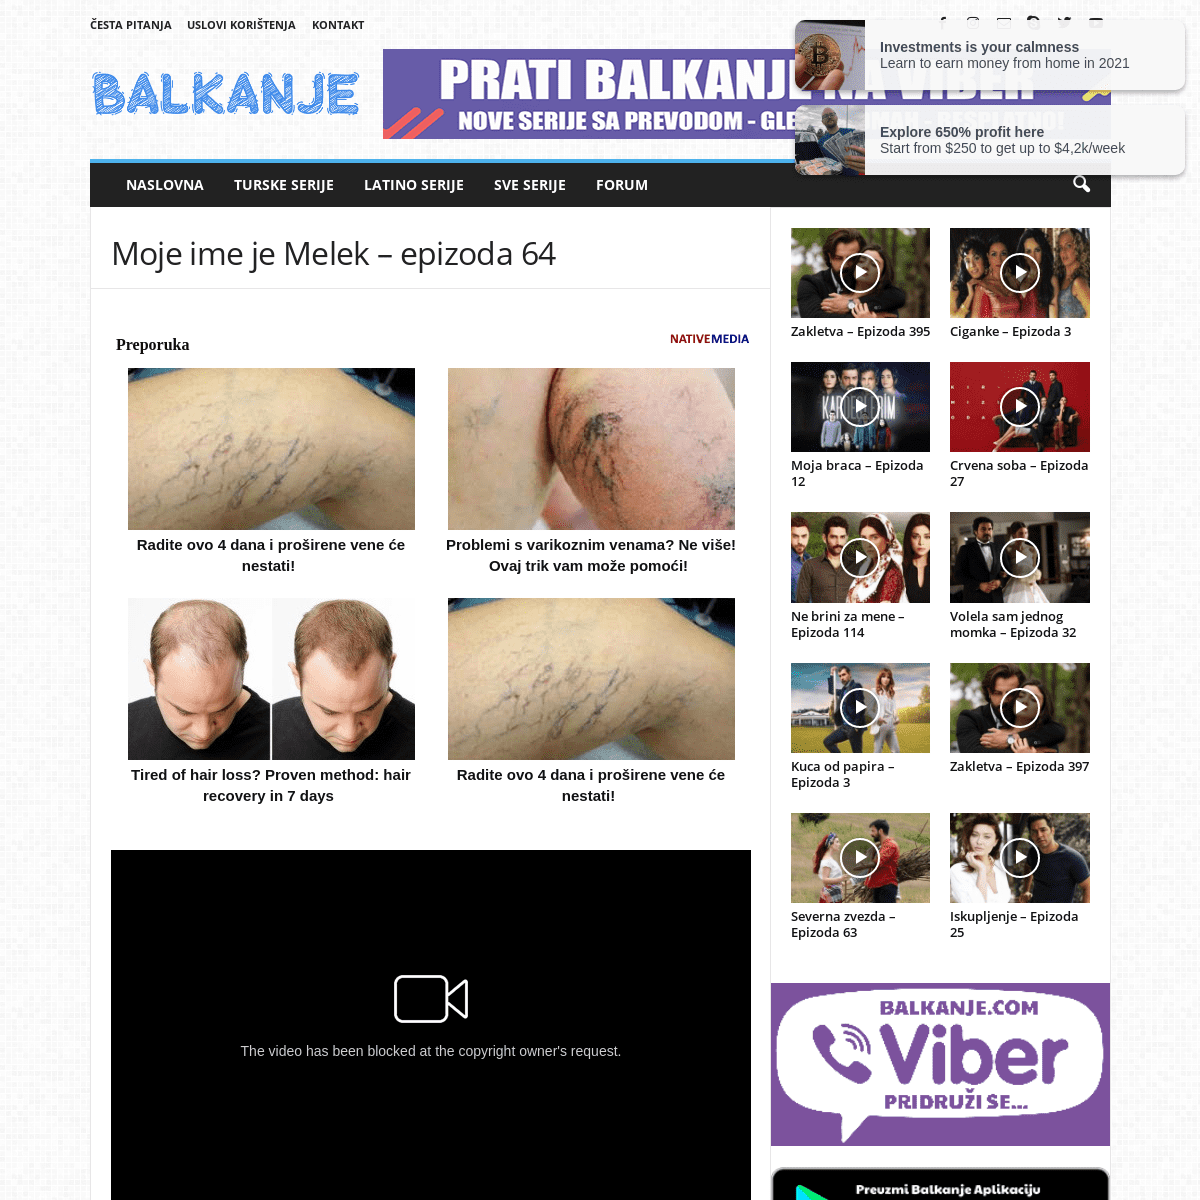 A complete backup of https://balkanje.com/moje-ime-je-melek-epizoda-64/